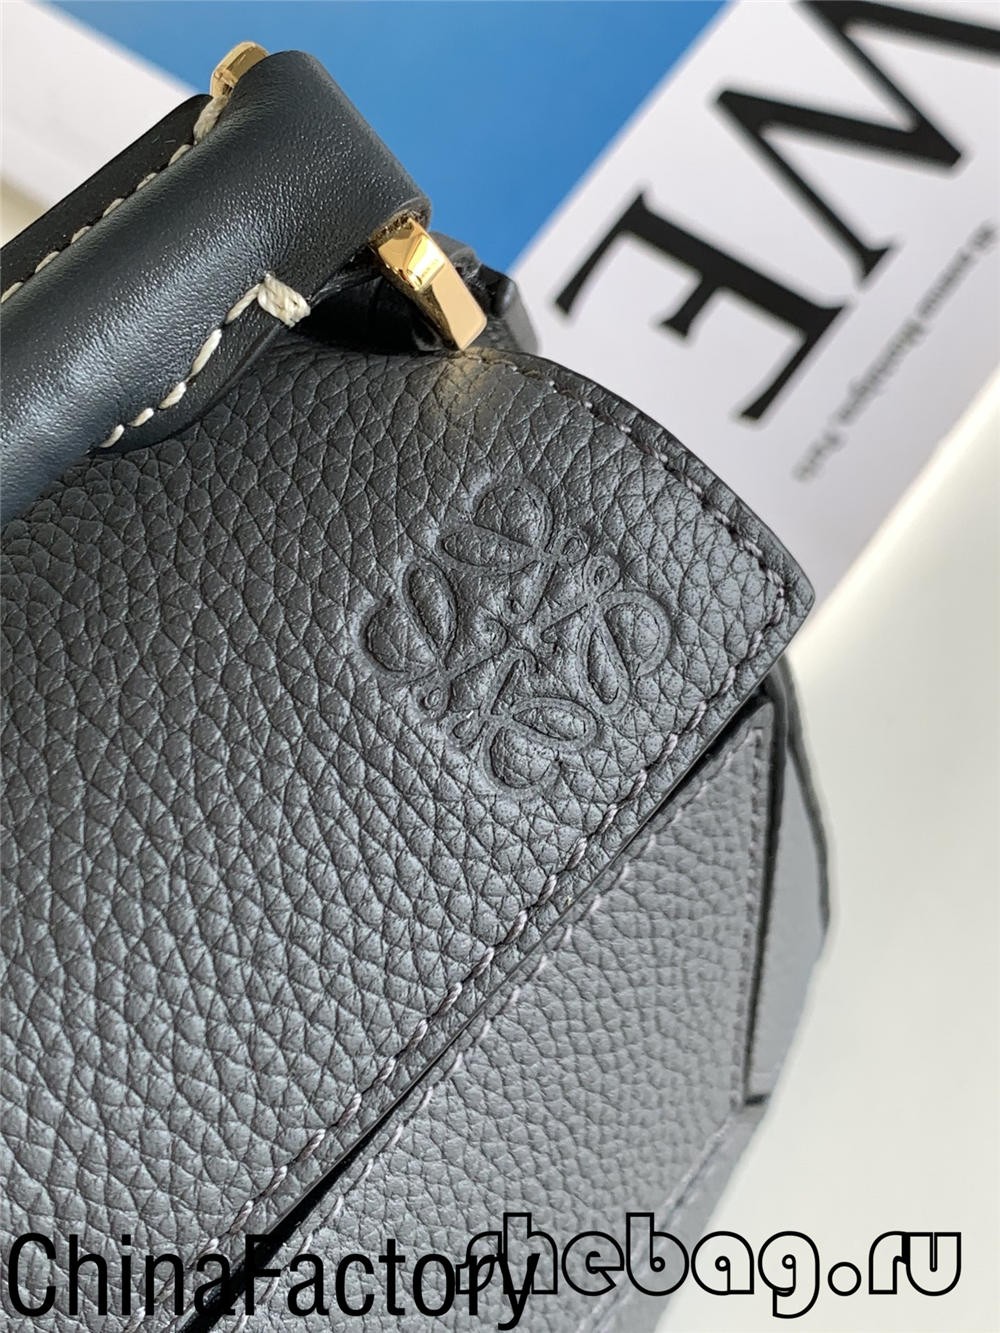 Pi bon revizyon kopi sak Loewe: Loewe Cubi (mizajou 2022) - Pi bon kalite fo Louis Vuitton Bag Online Store, Replika sak designer ru